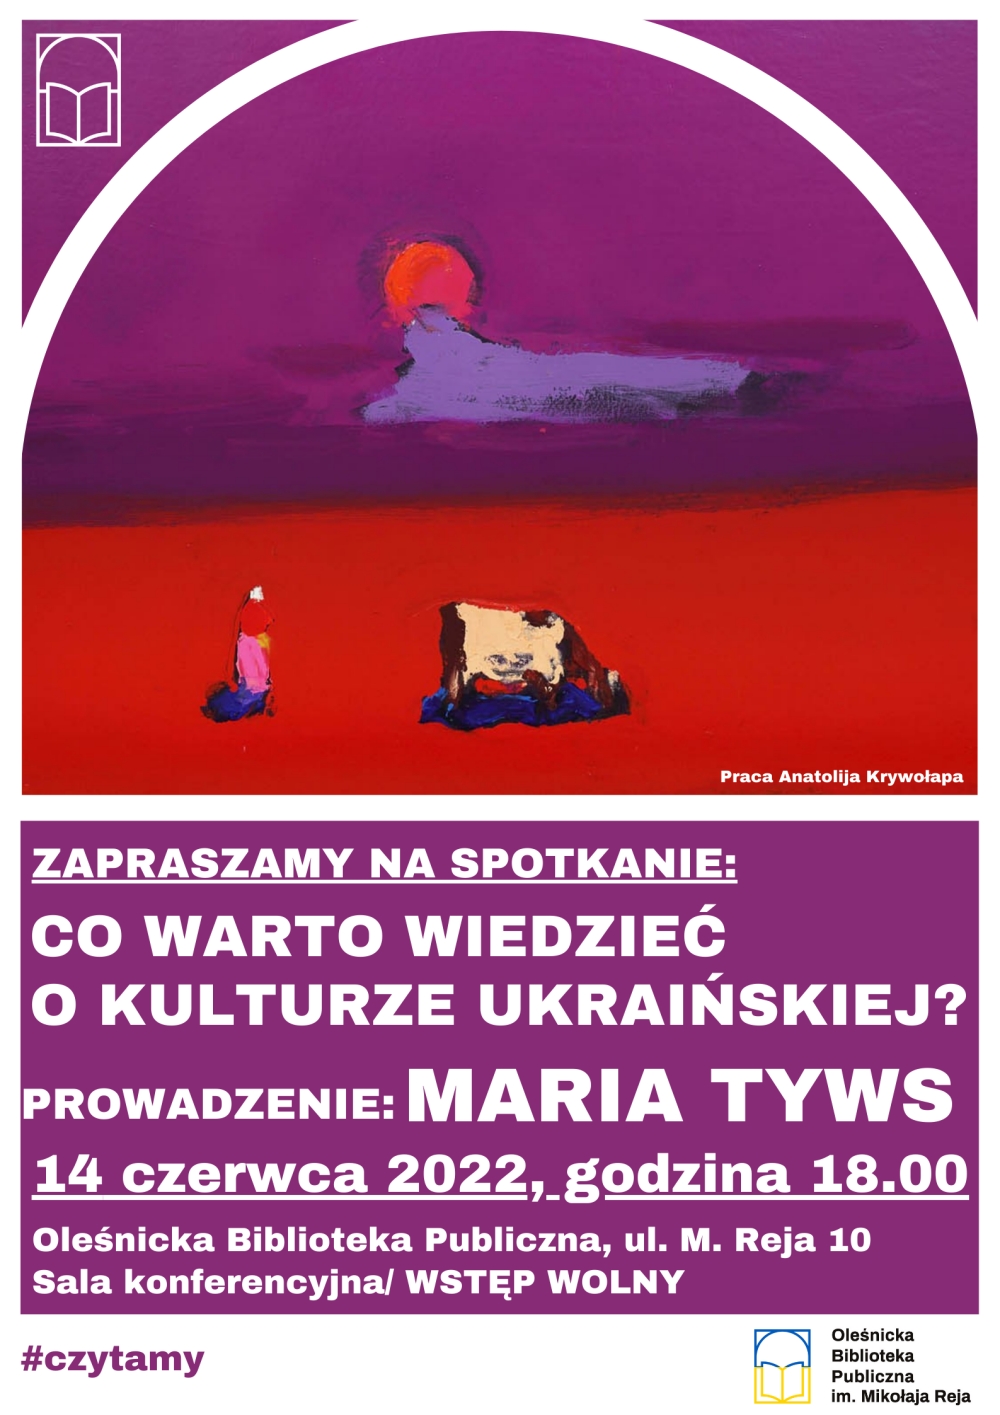 Plakat promujący spotkanie z Marią Tyws w wersji polskiej